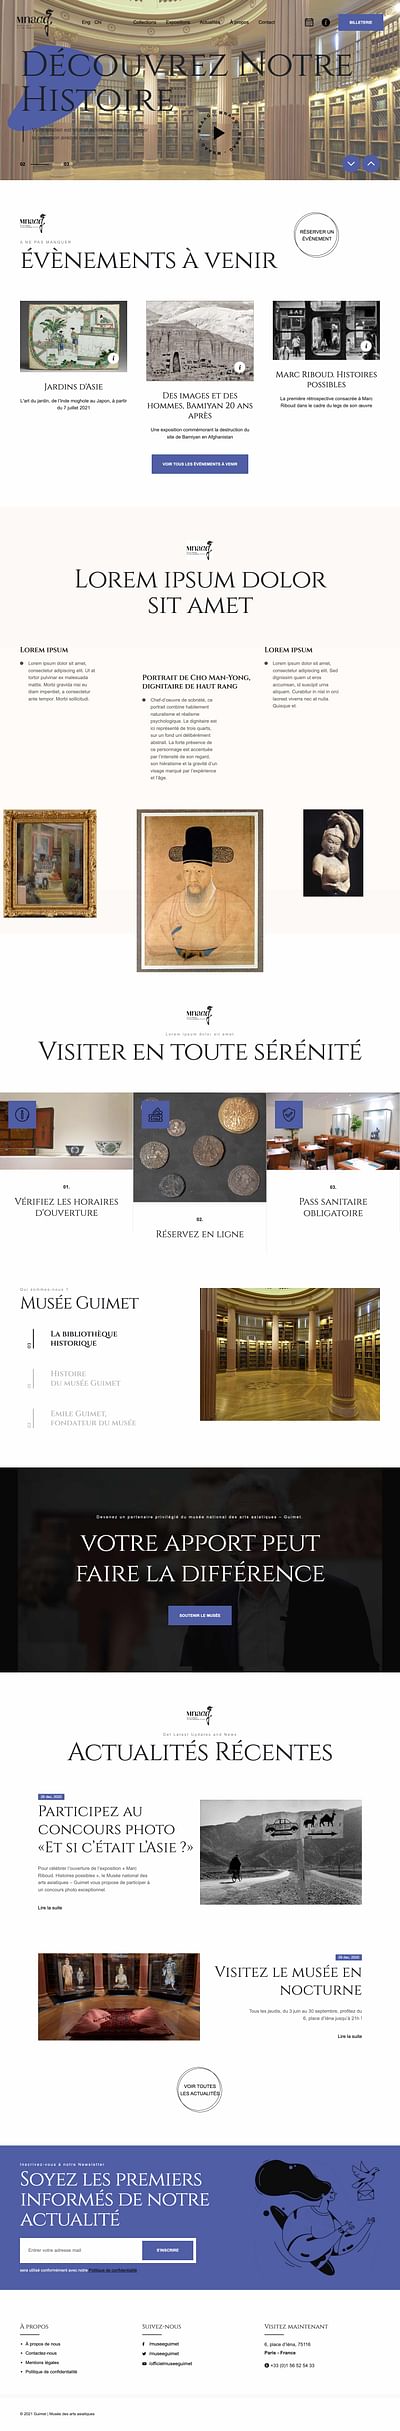 Appel d'offre: la refonte du site du musée Guimet - Webseitengestaltung